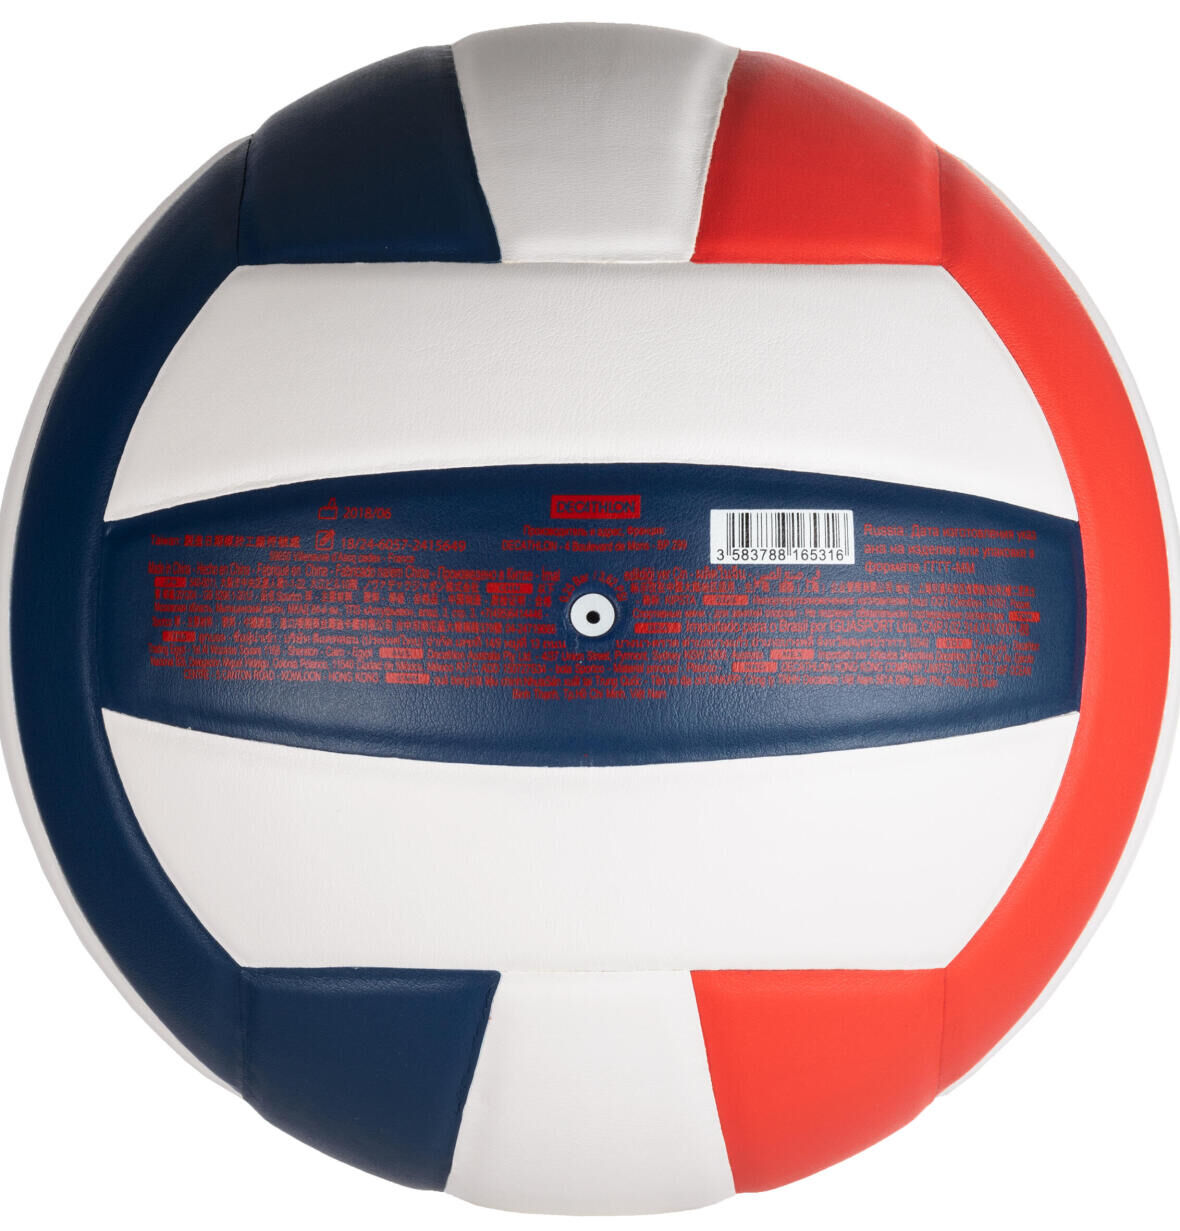 L'importance de bien gonfler son ballon de volley-ball 